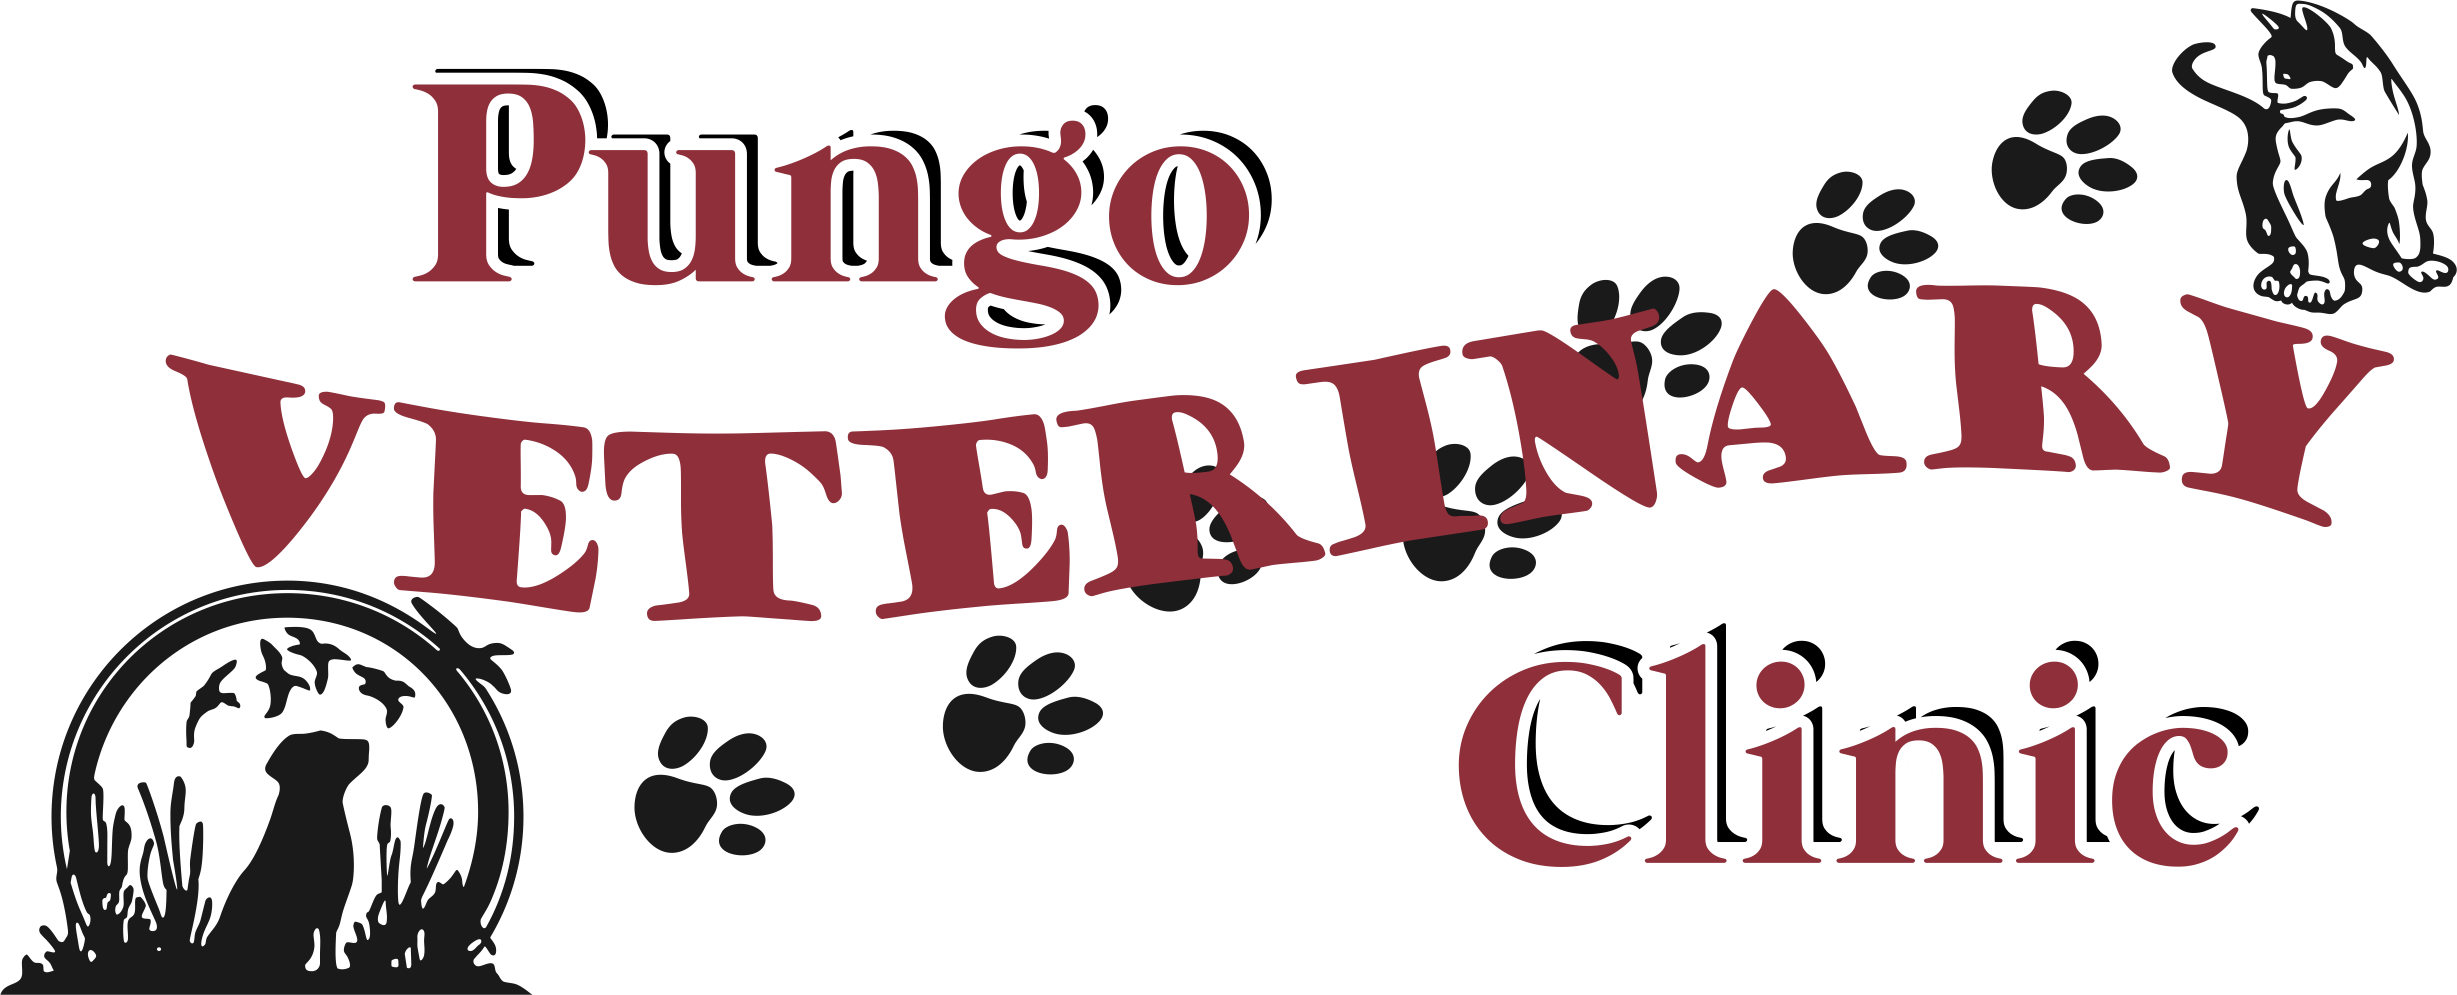 Pungo Veterinary Clinic Logo